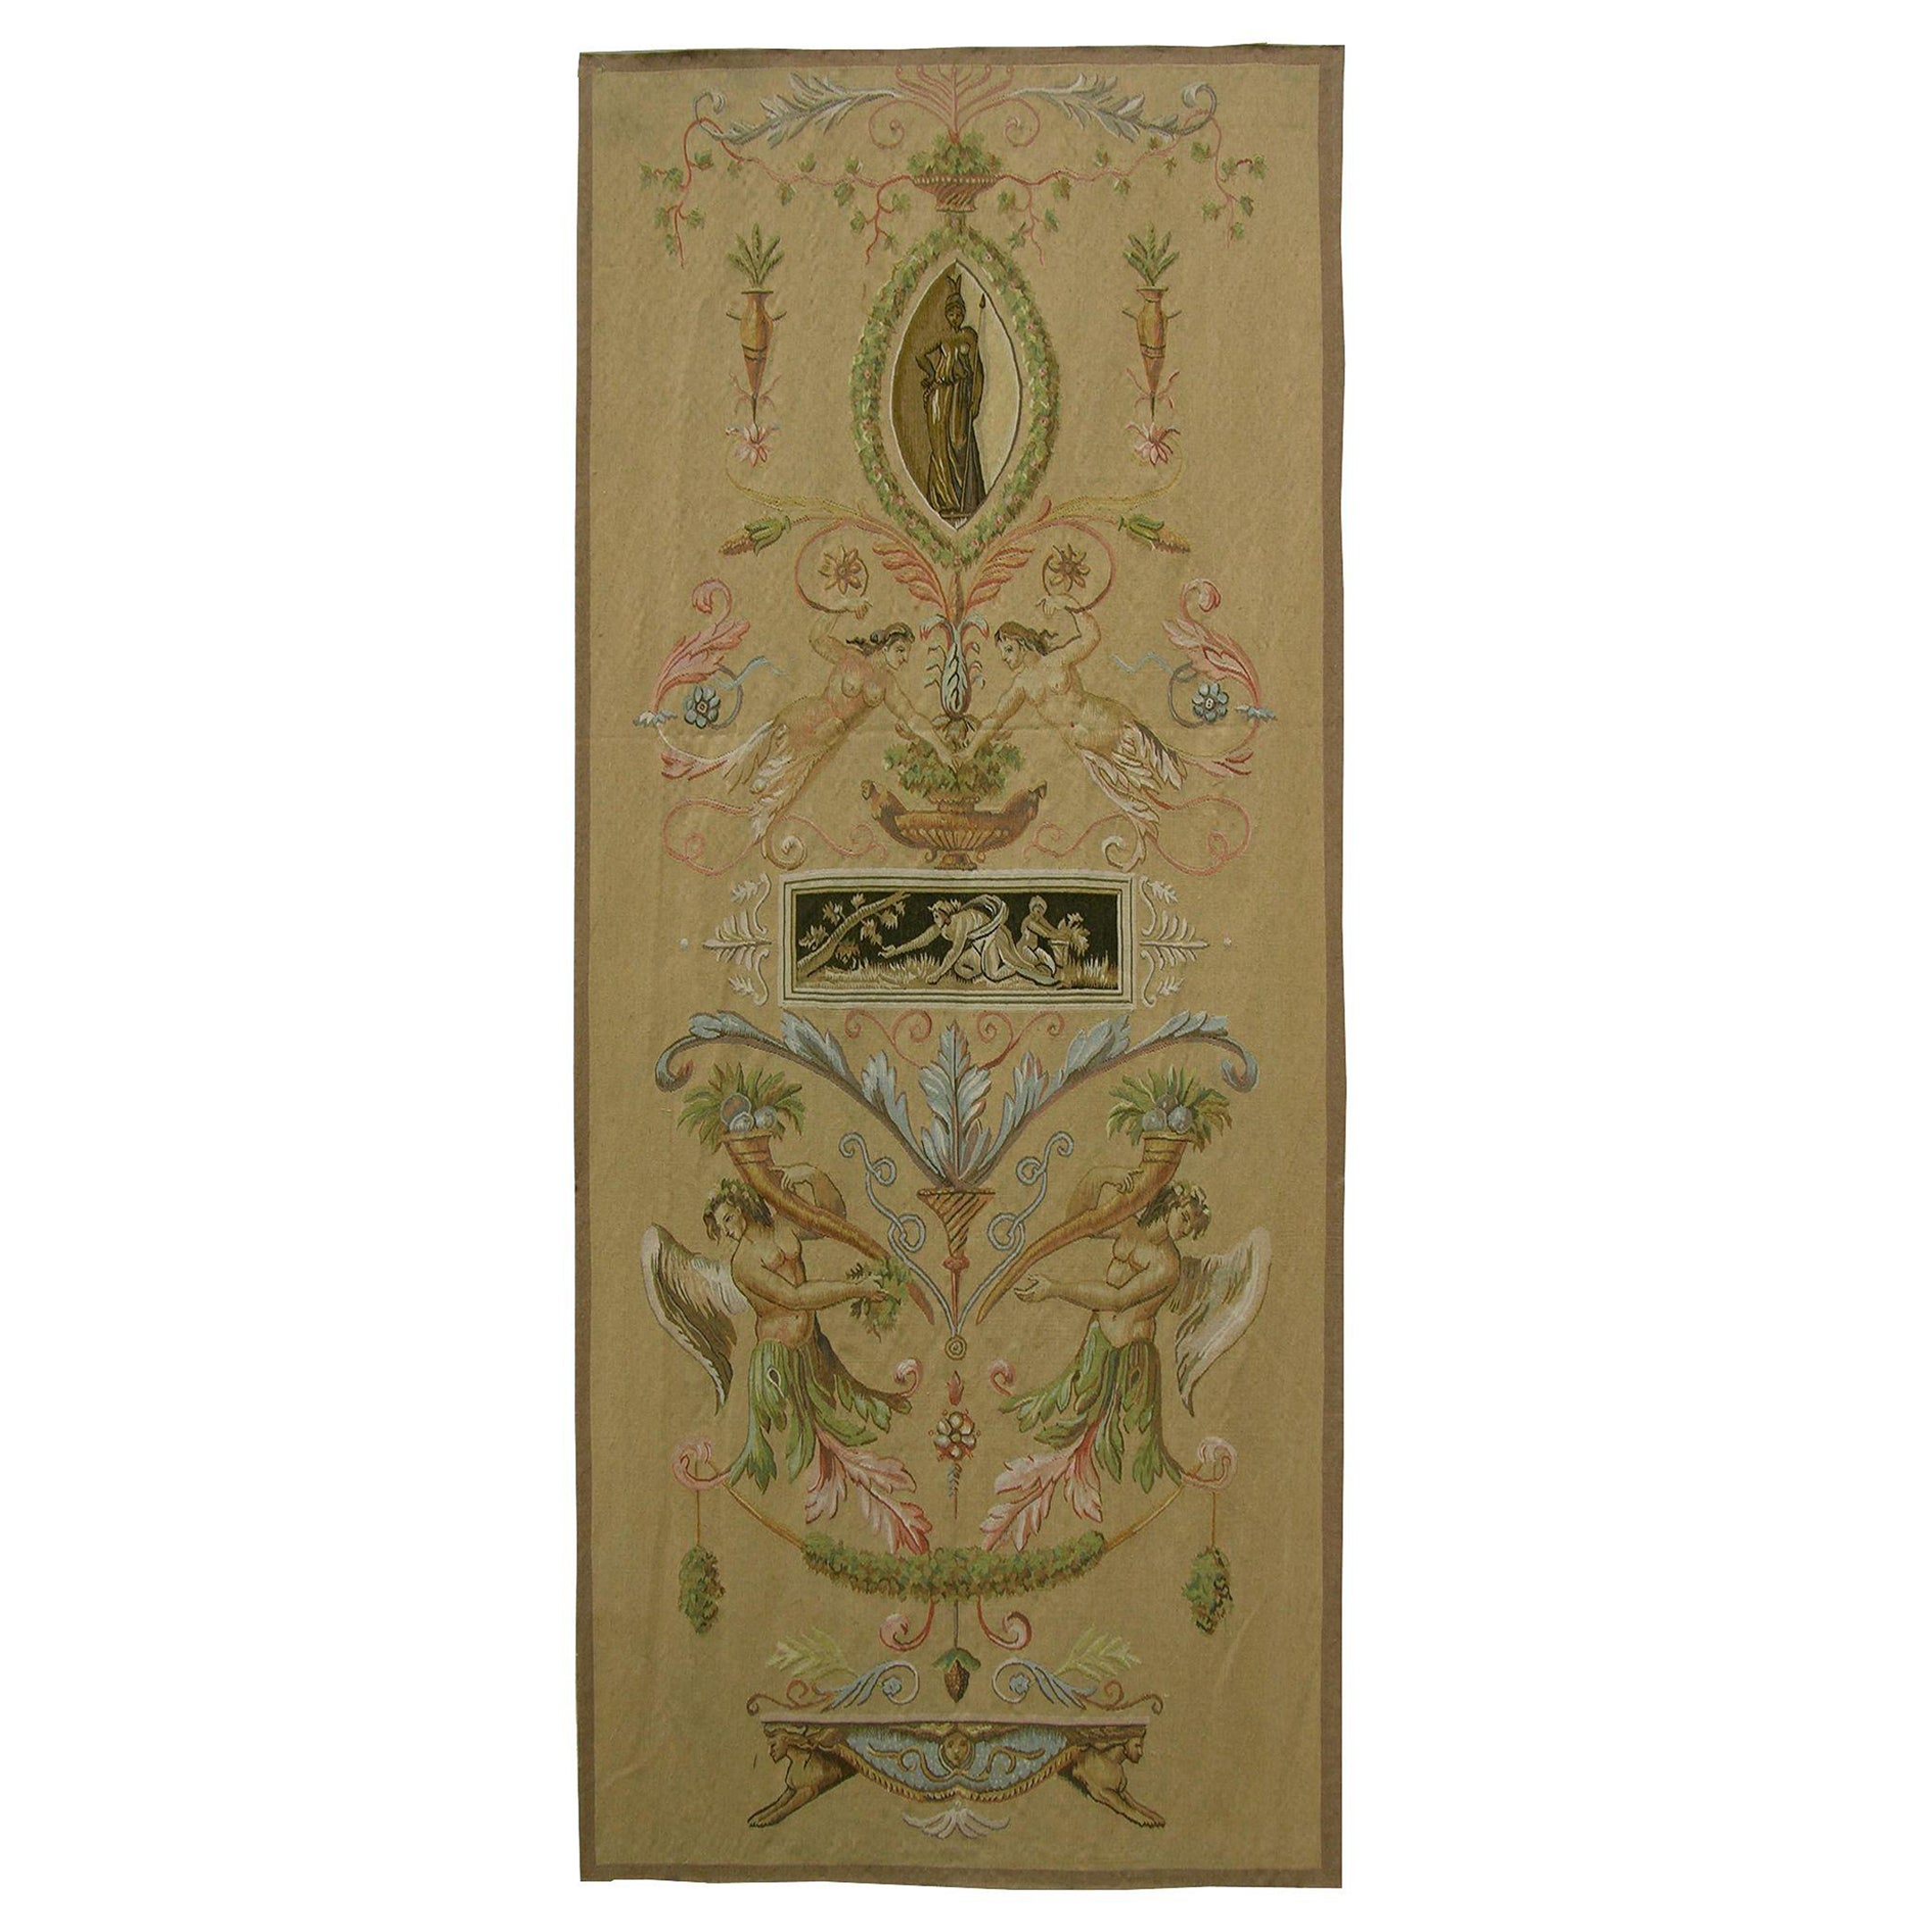 Vintage Flying Angel Design Tapestry 3' X 8'2" For Sale